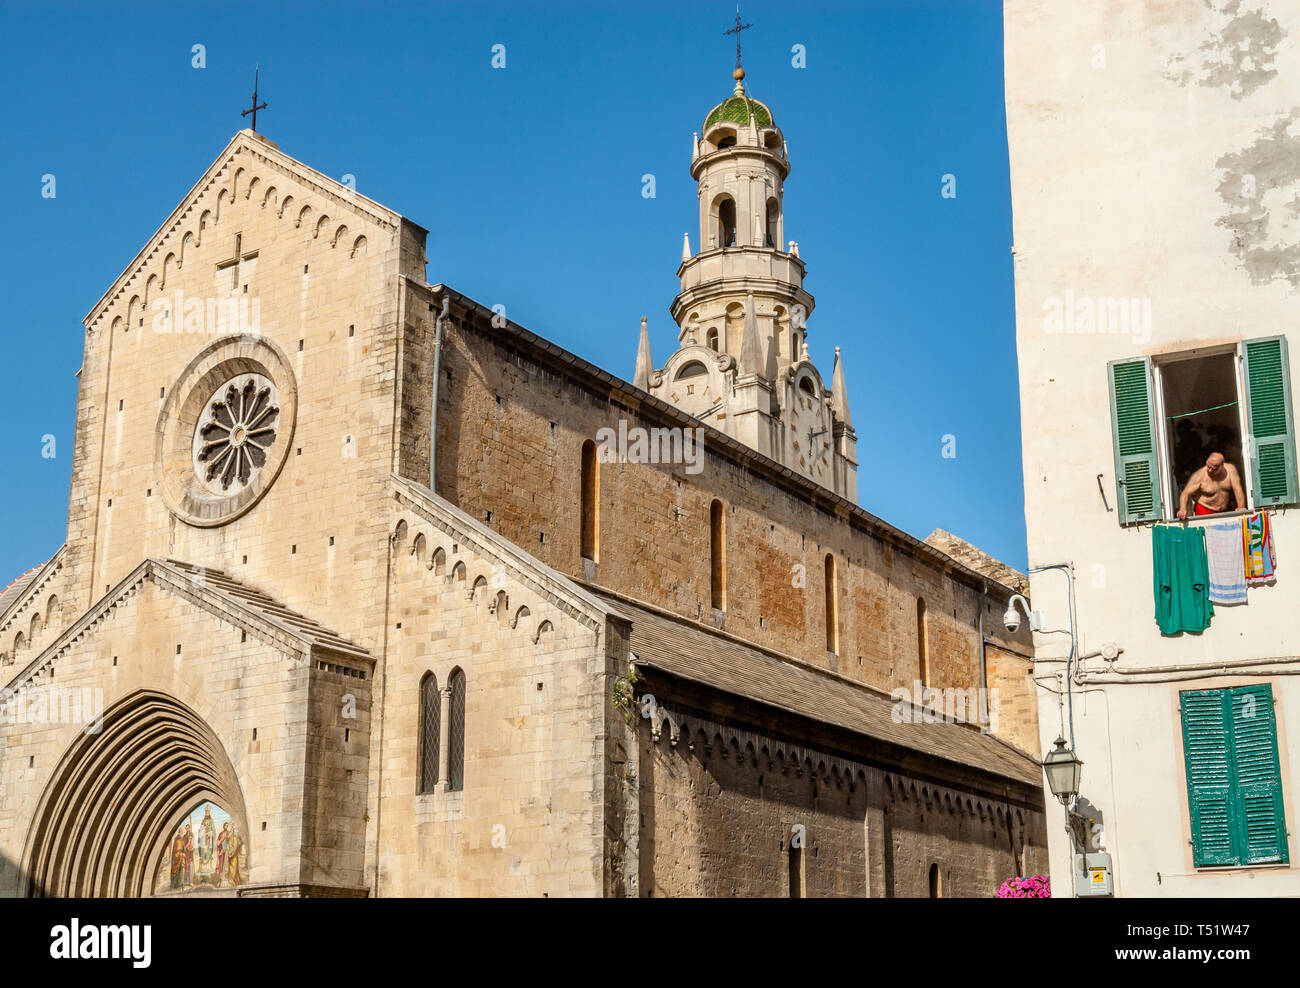 Cathedral of san siro сан ремо сколько по времени делается виза в италию